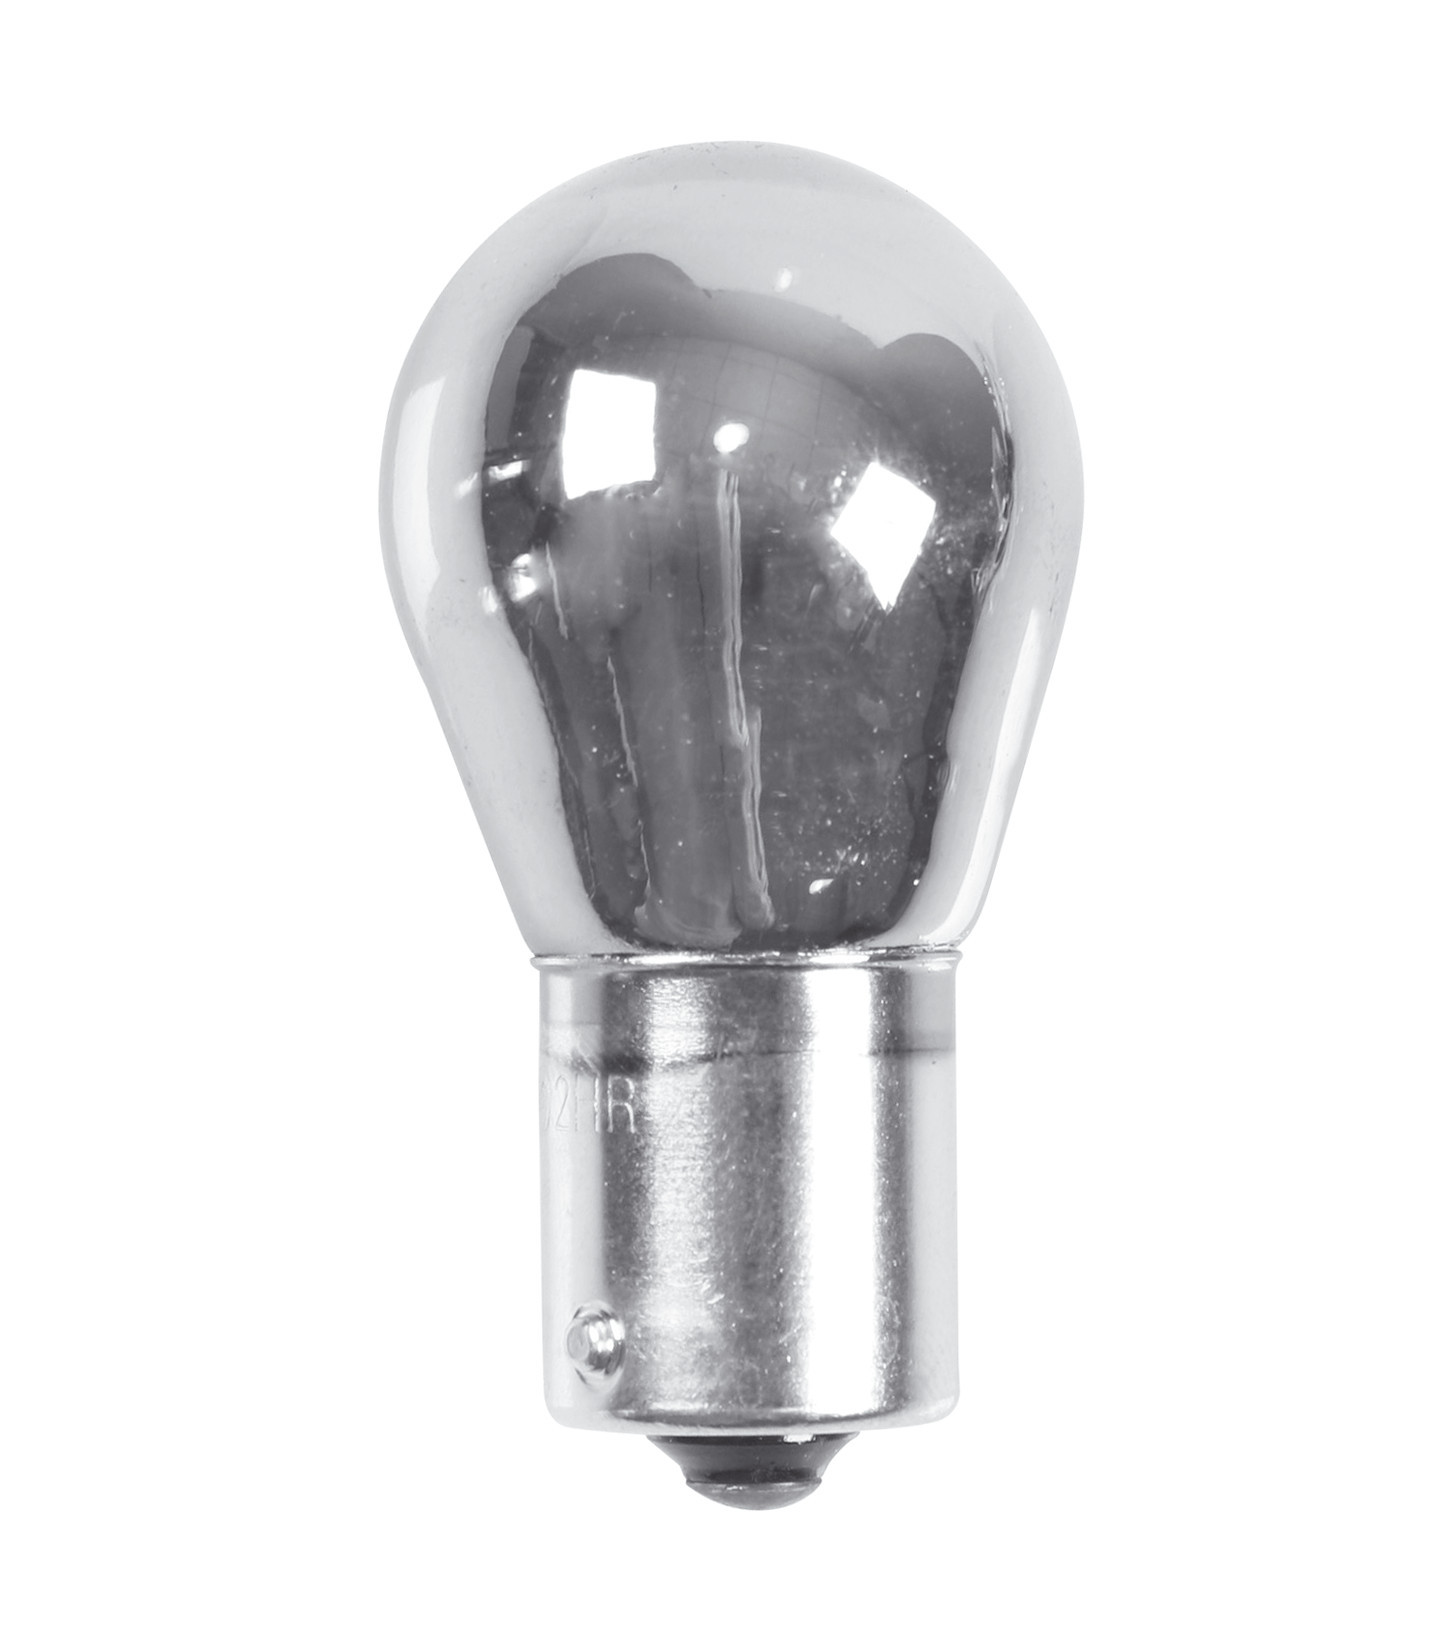 Spare bulb 12V 21W BA15s single filament lamp 2pcs - Chrome/Red thumb